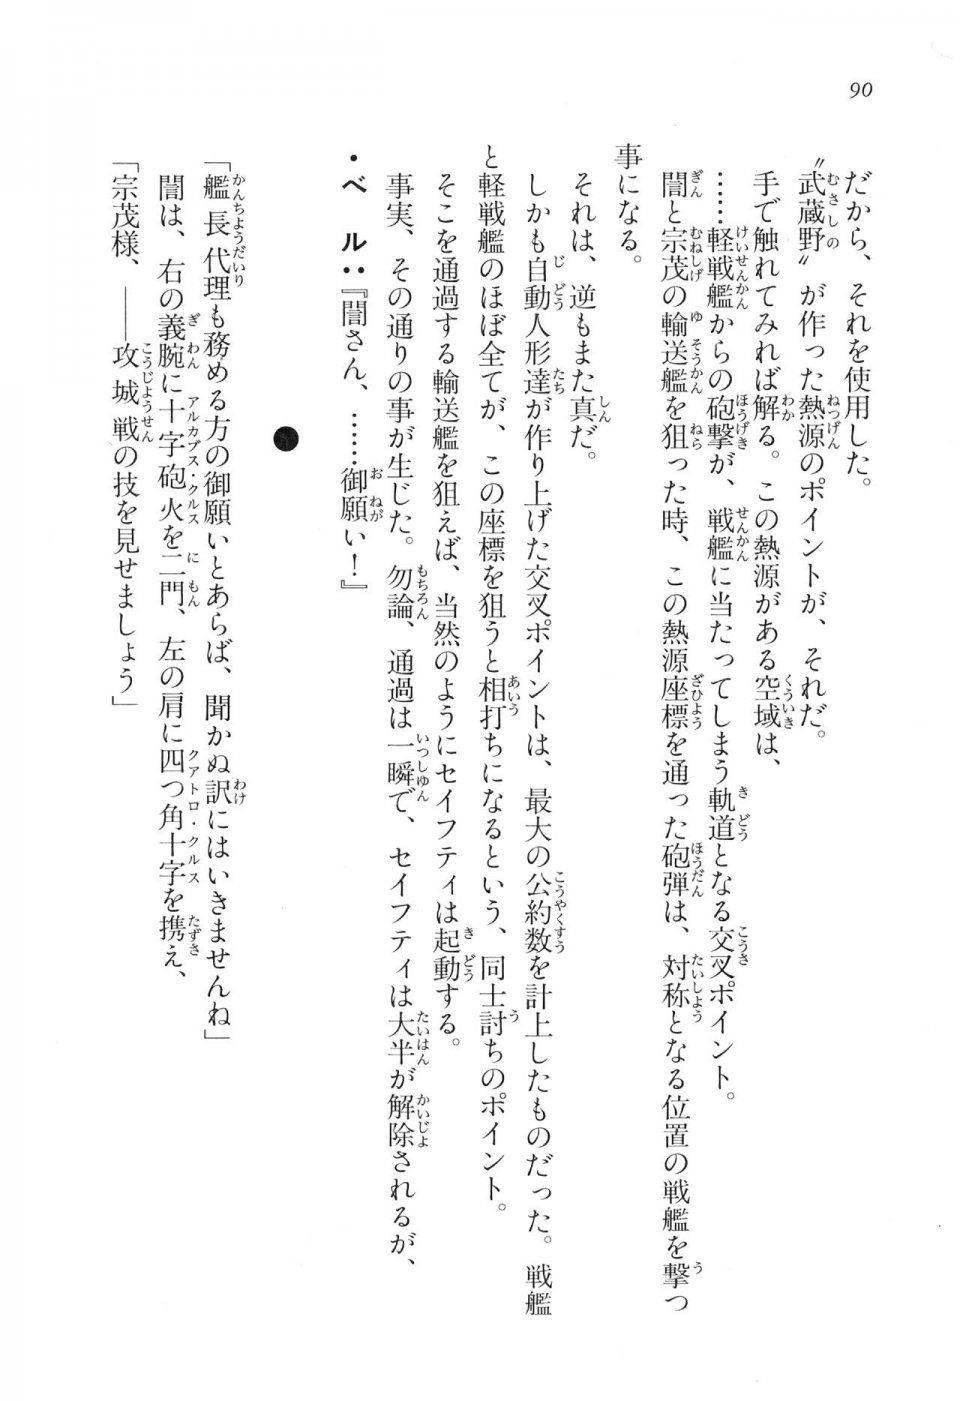 Kyoukai Senjou no Horizon LN Vol 17(7B) - Photo #90